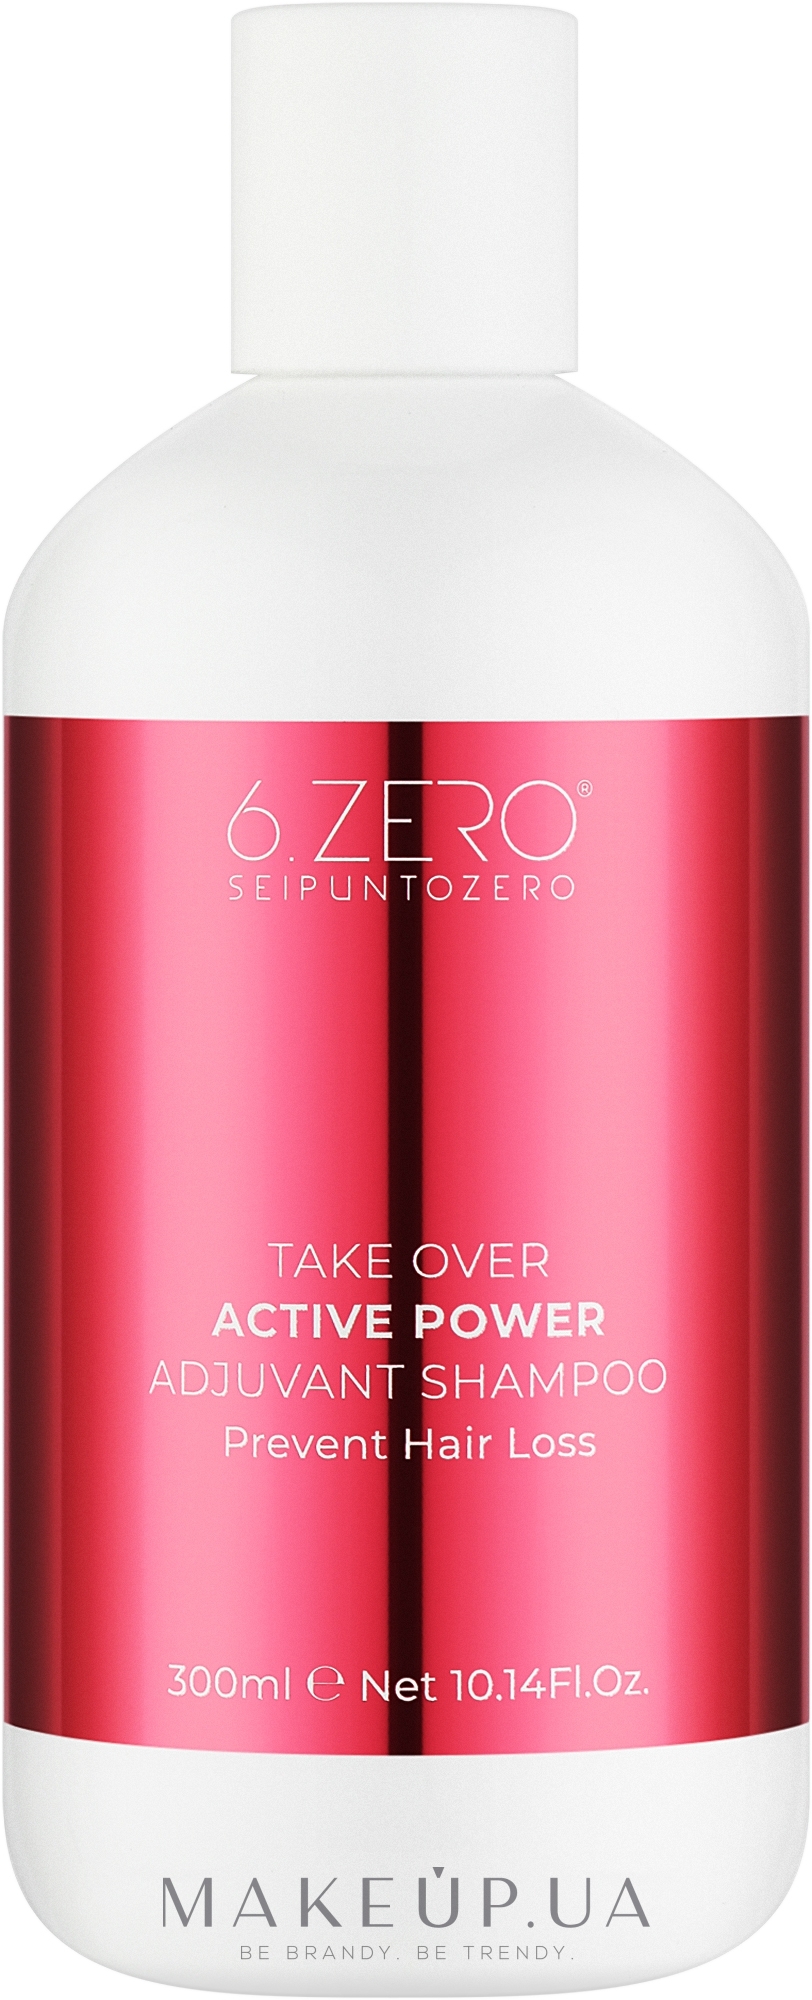 Шампунь против выпадения волос - Seipuntozero Take Over Active Power — фото 300ml